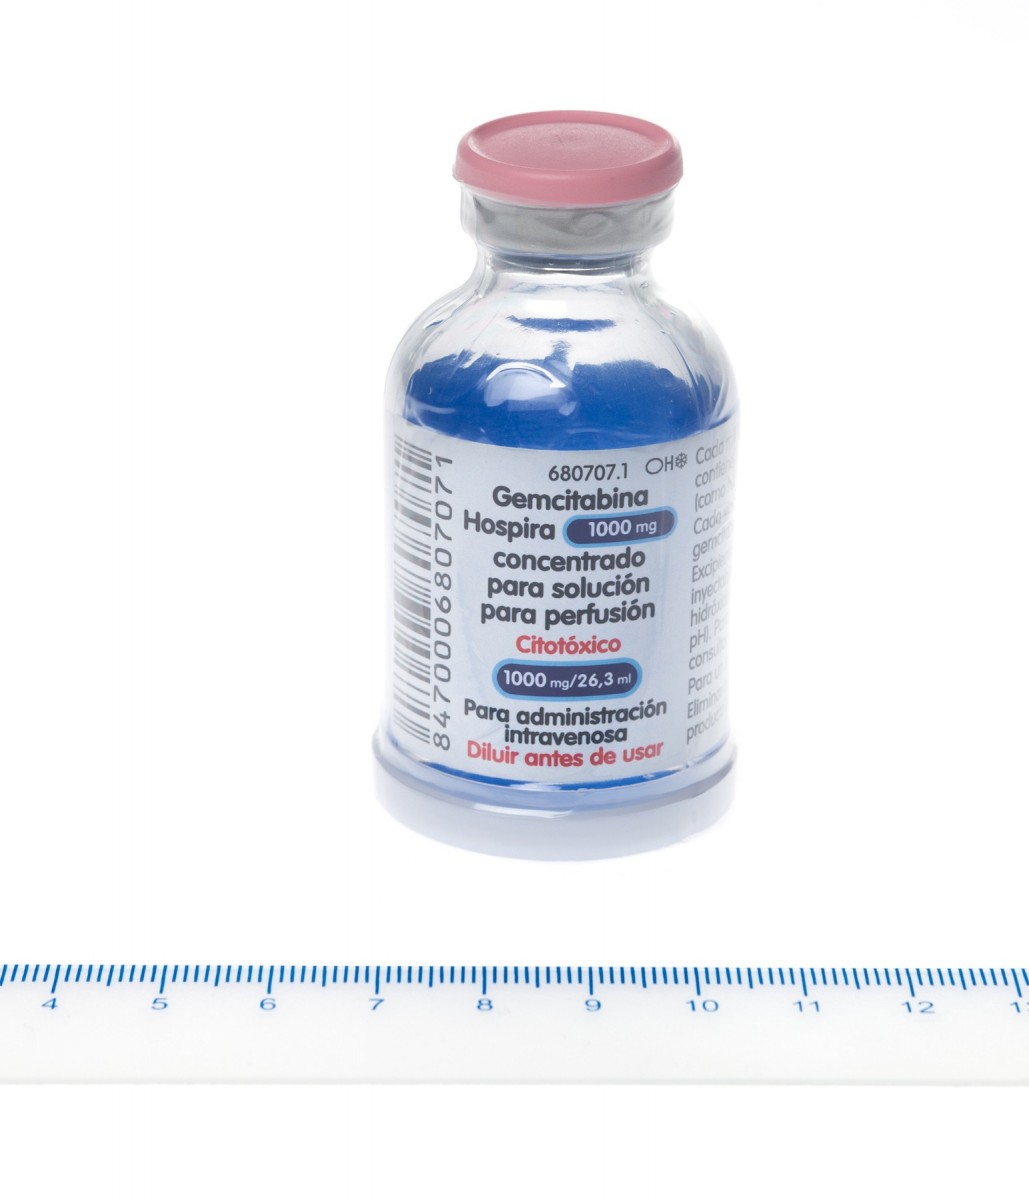 GEMCITABINA HOSPIRA 1000 mg CONCENTRADO PARA SOLUCION PARA PERFUSION ,  1 vial de 26,3 ml fotografía de la forma farmacéutica.